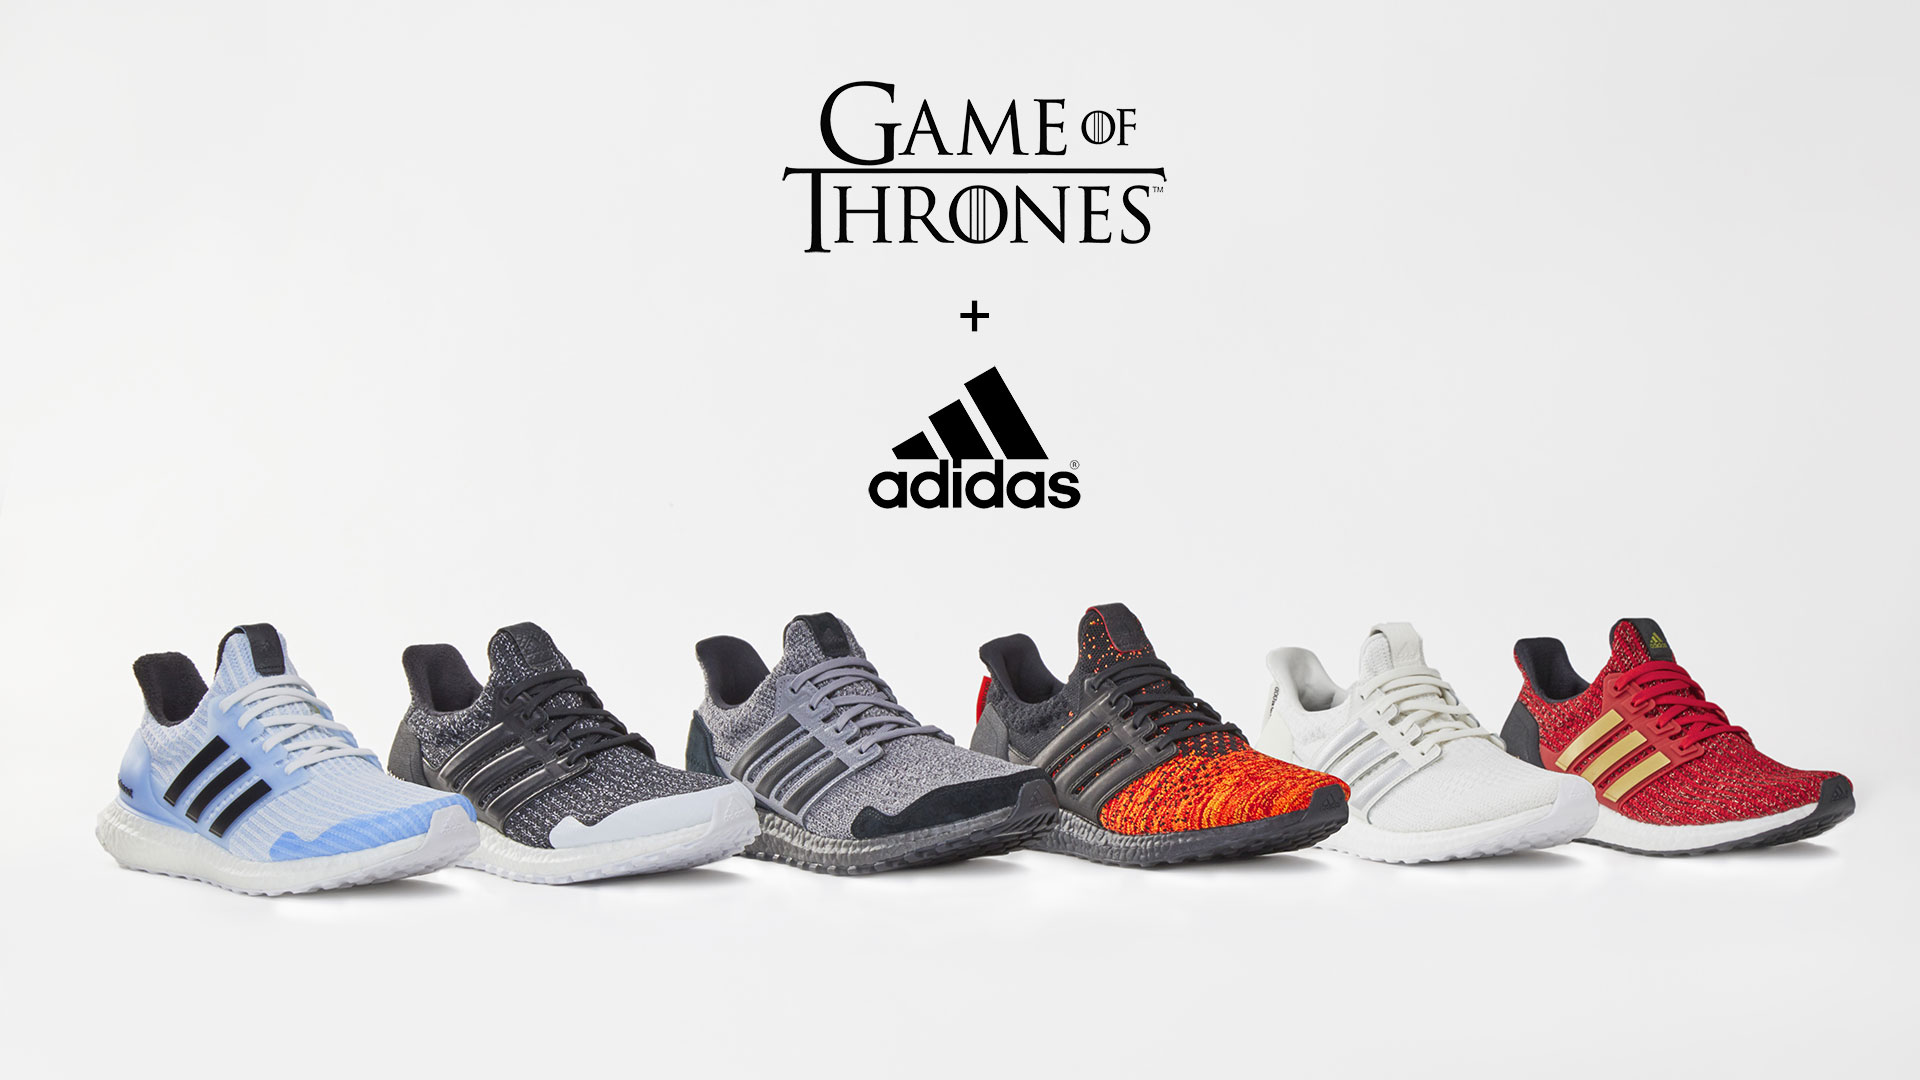 Compañero estilo Vagabundo Adidas lanza la edición limitada de zapatillas para running Ultraboost x  Game Of Thrones